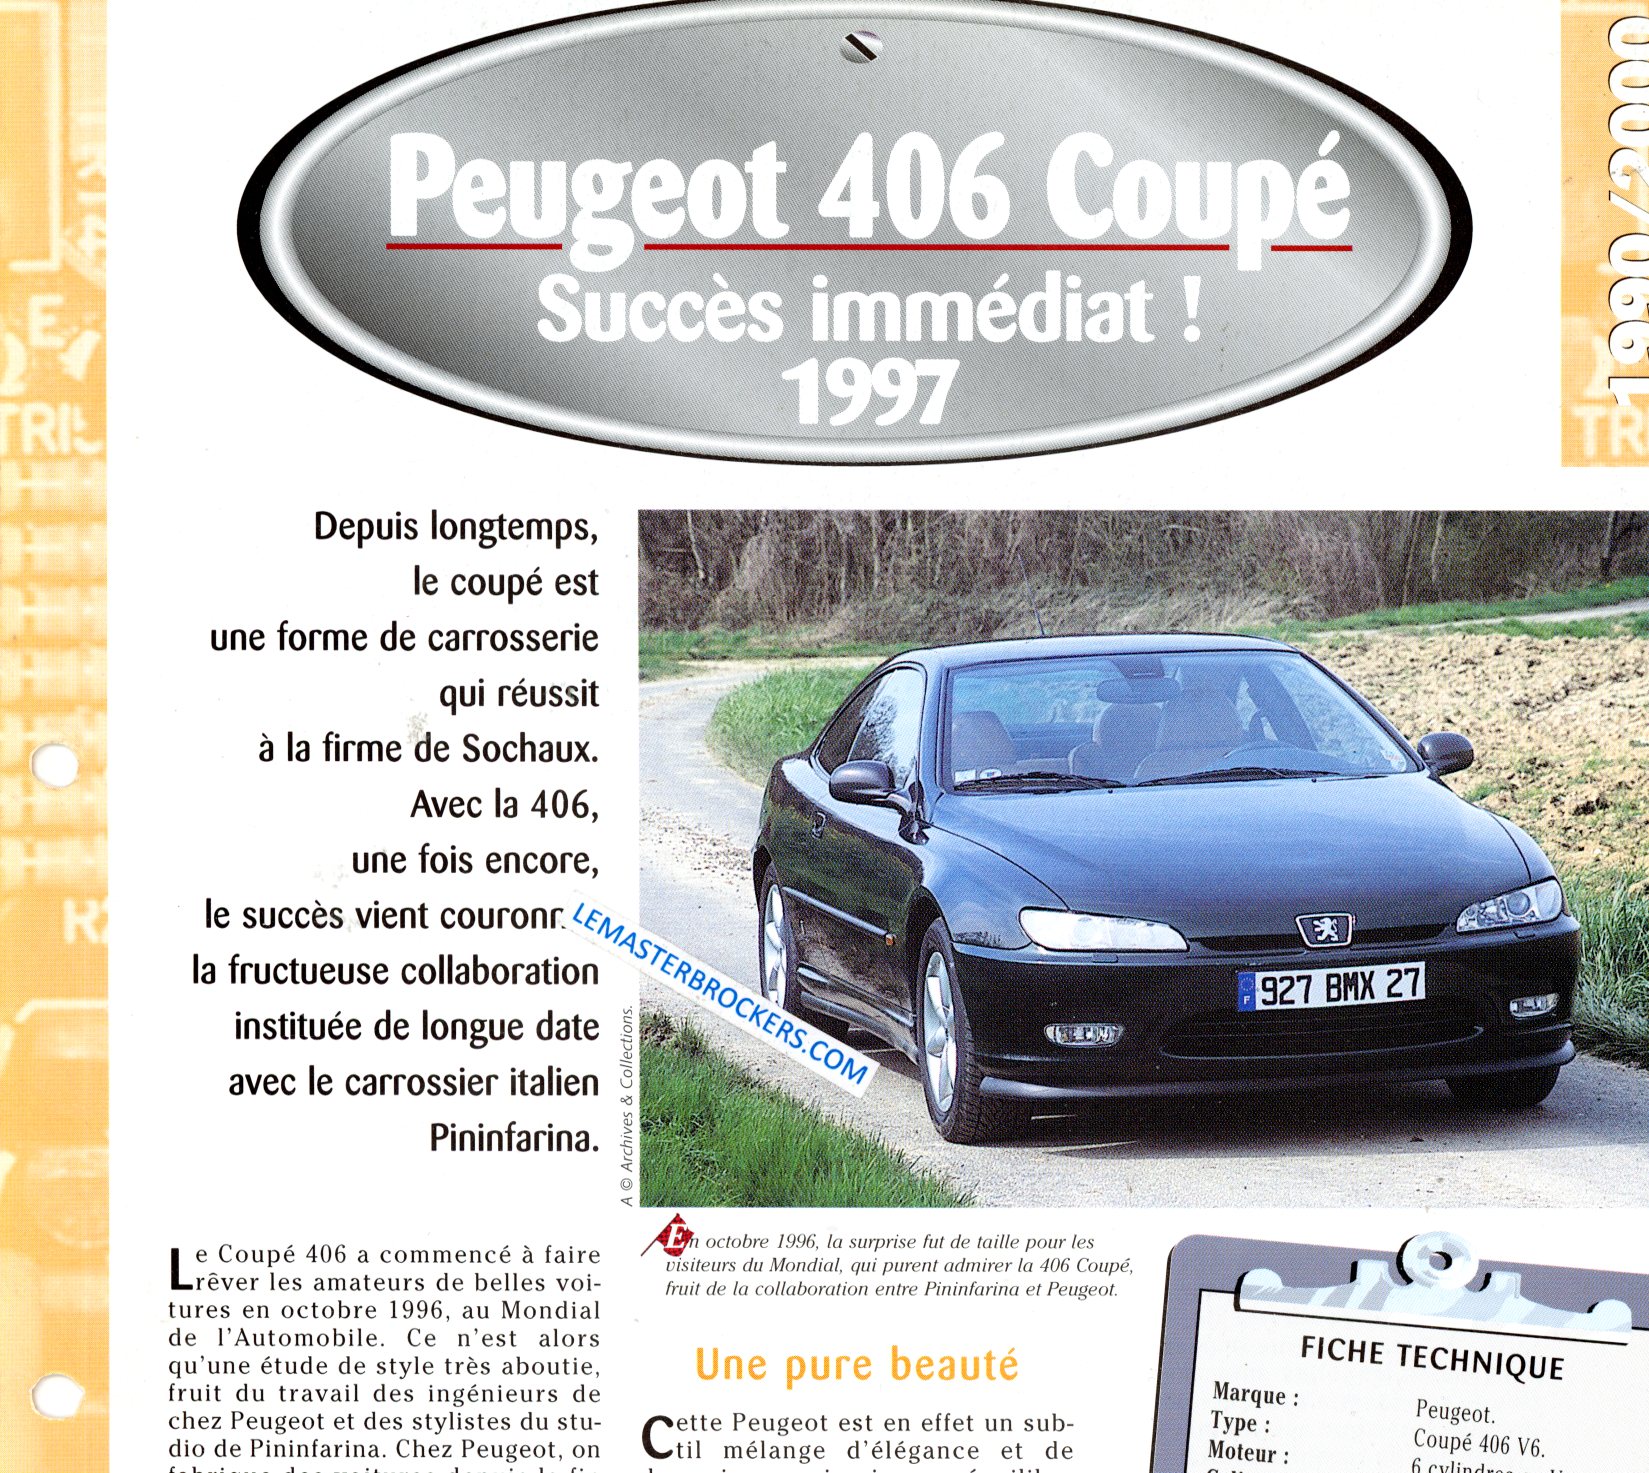 PEUGEOT 406 COUPE 1997 FICHE TECHNIQUE